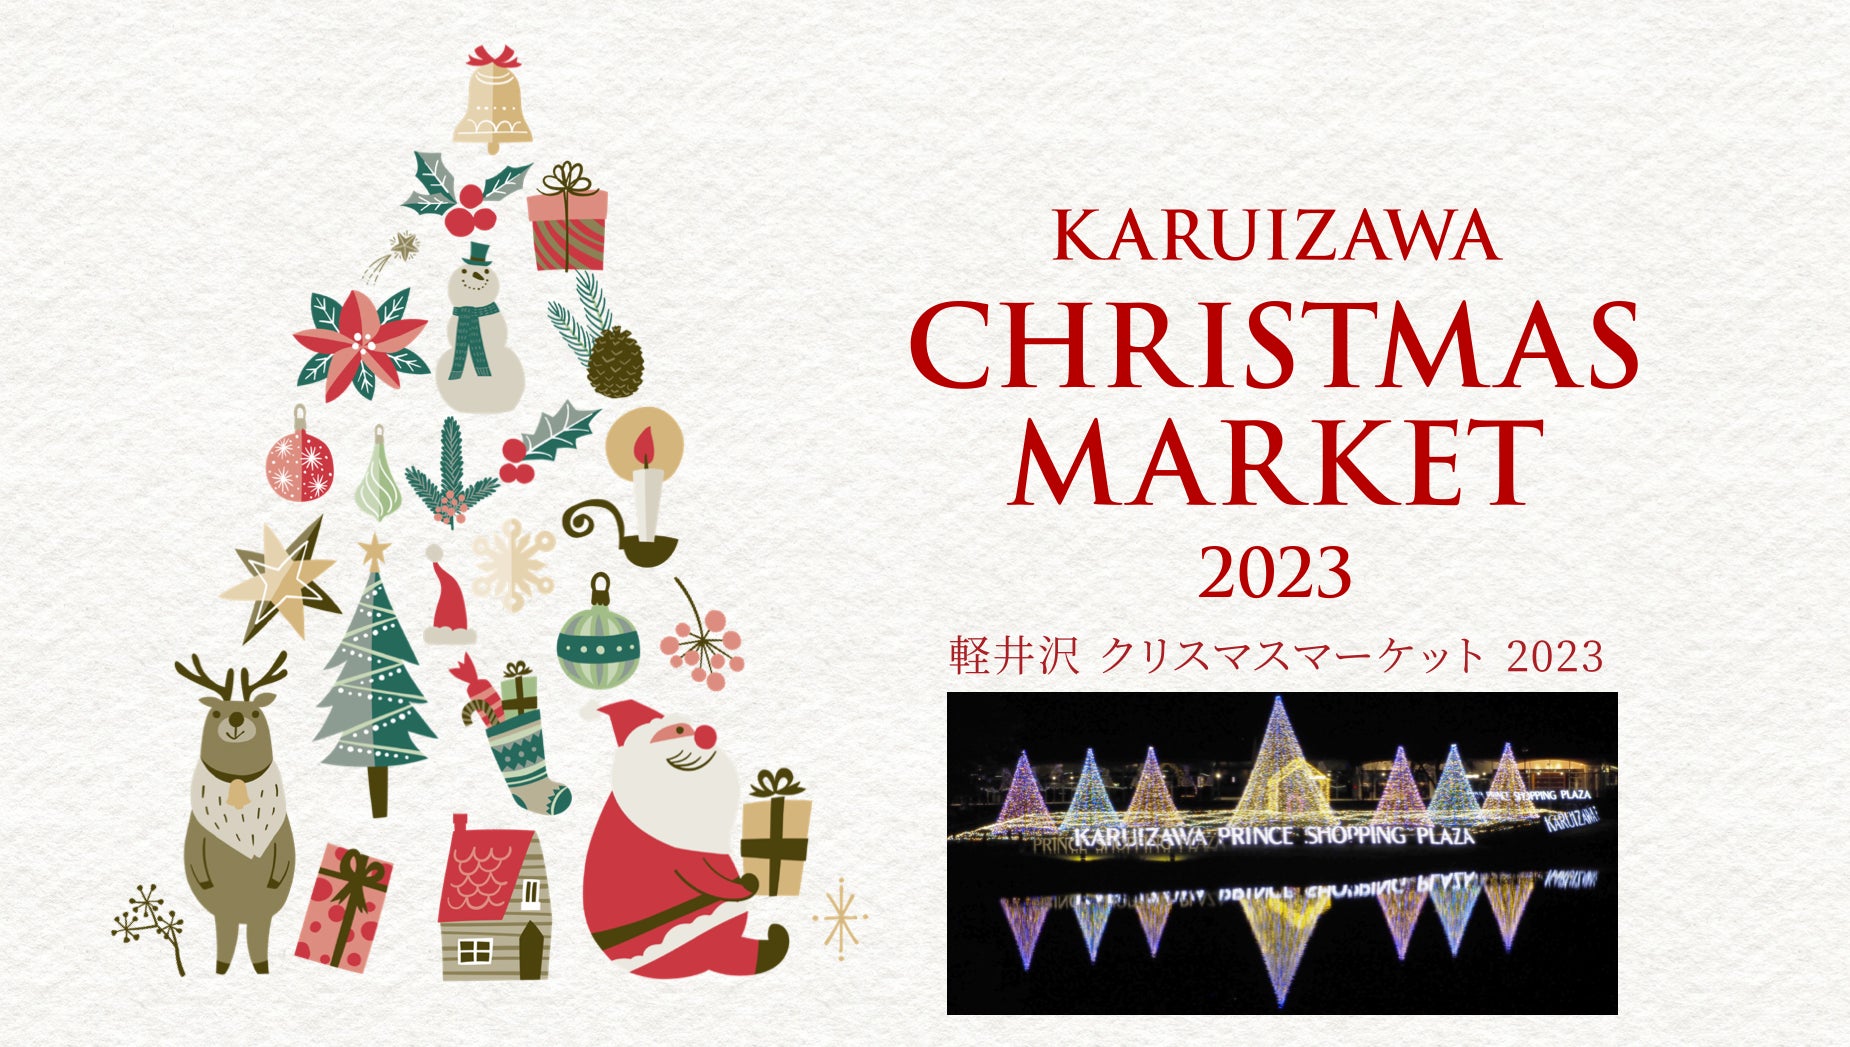 軽井沢でクリスマスマーケット開催決定！リニューアルしたイルミネーションが幻想的なクリスマス空間を演出